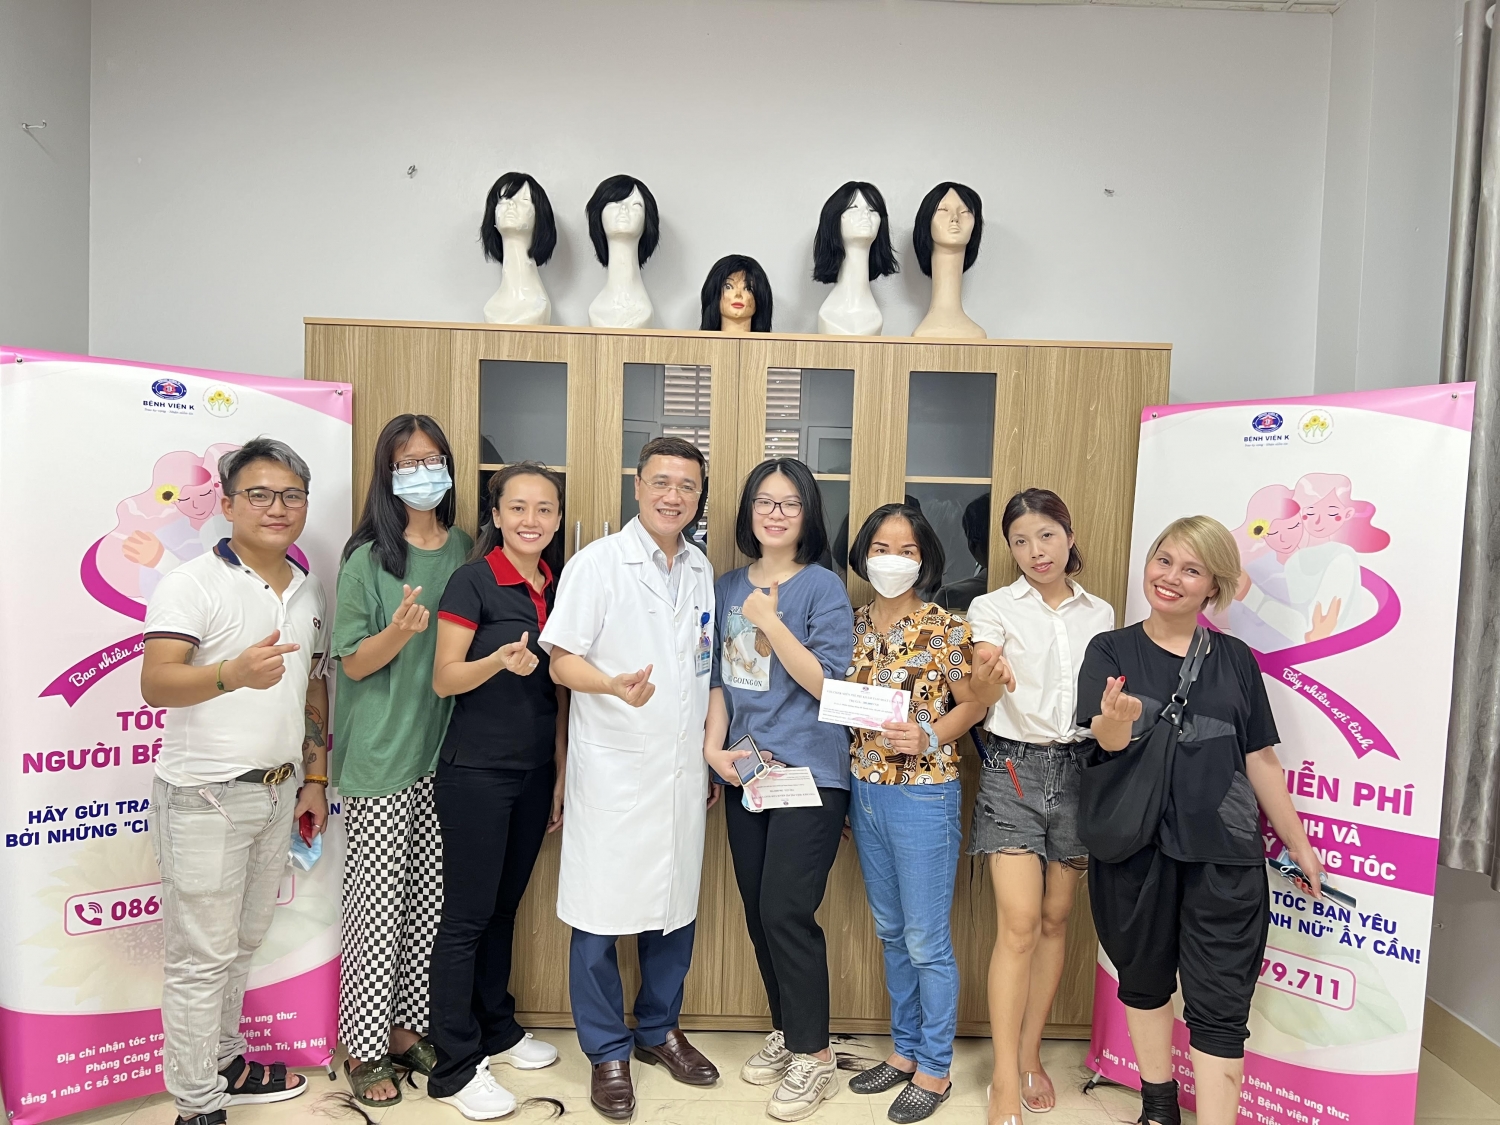 Mạng Lưới Ung Thư Vú Việt Nam  Breast Cancer Network Vietnam BCNV  Posts   Facebook